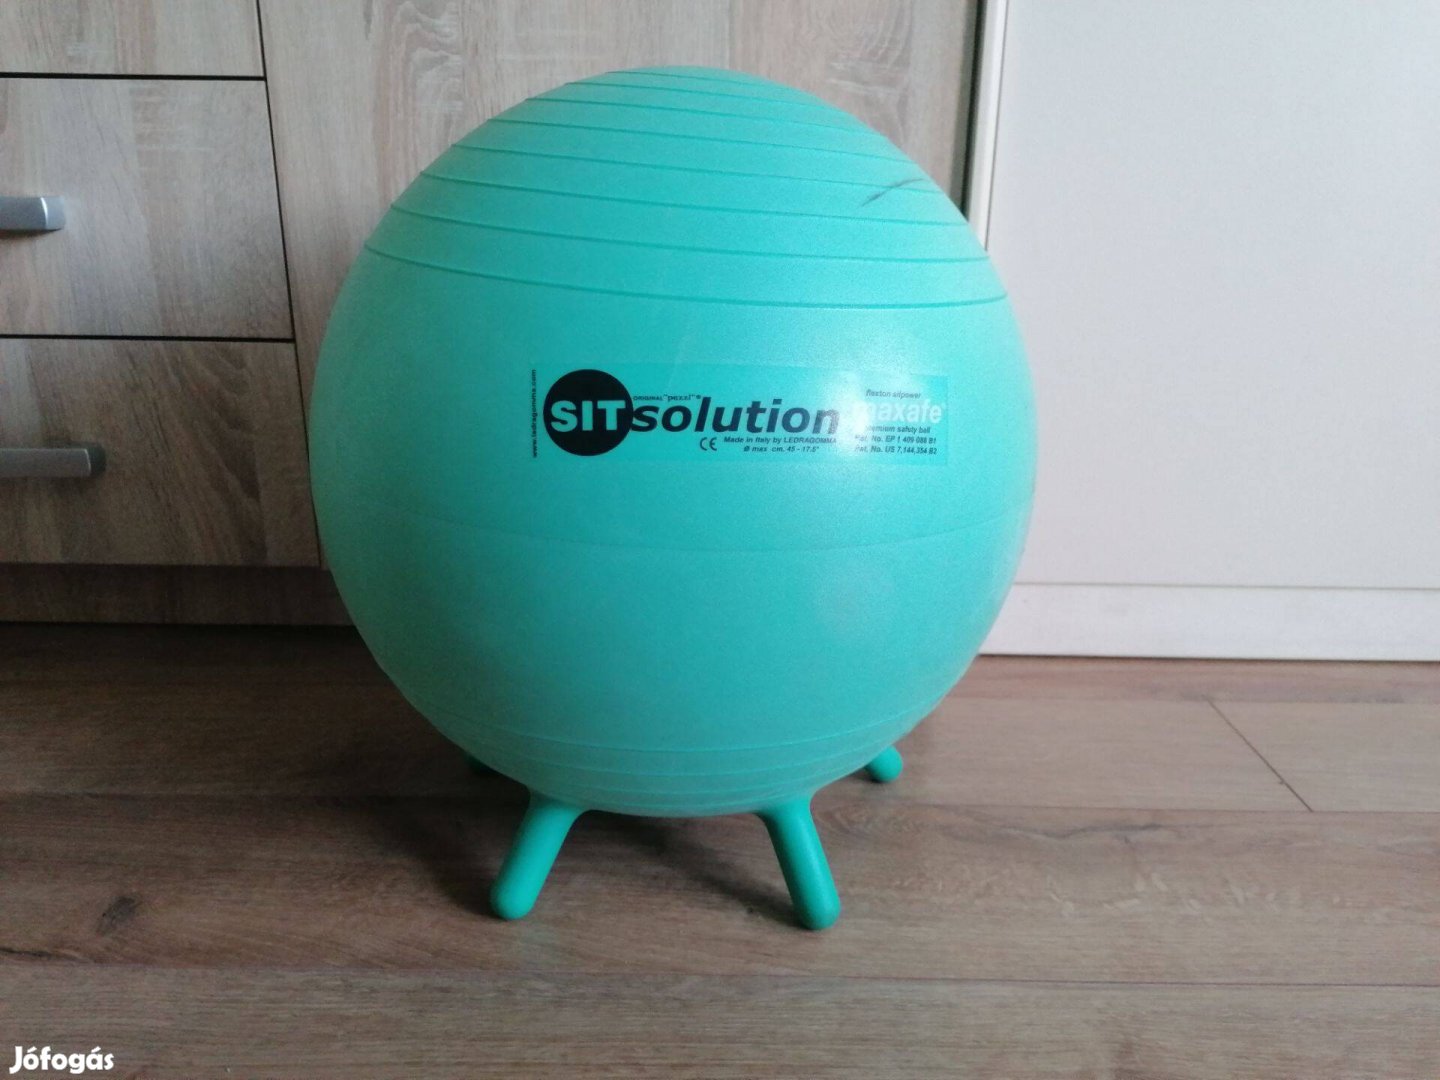 Használt Fit-Ball Ülőlabda,Maxafe 45 Cm Menta Zöld Sitsolution